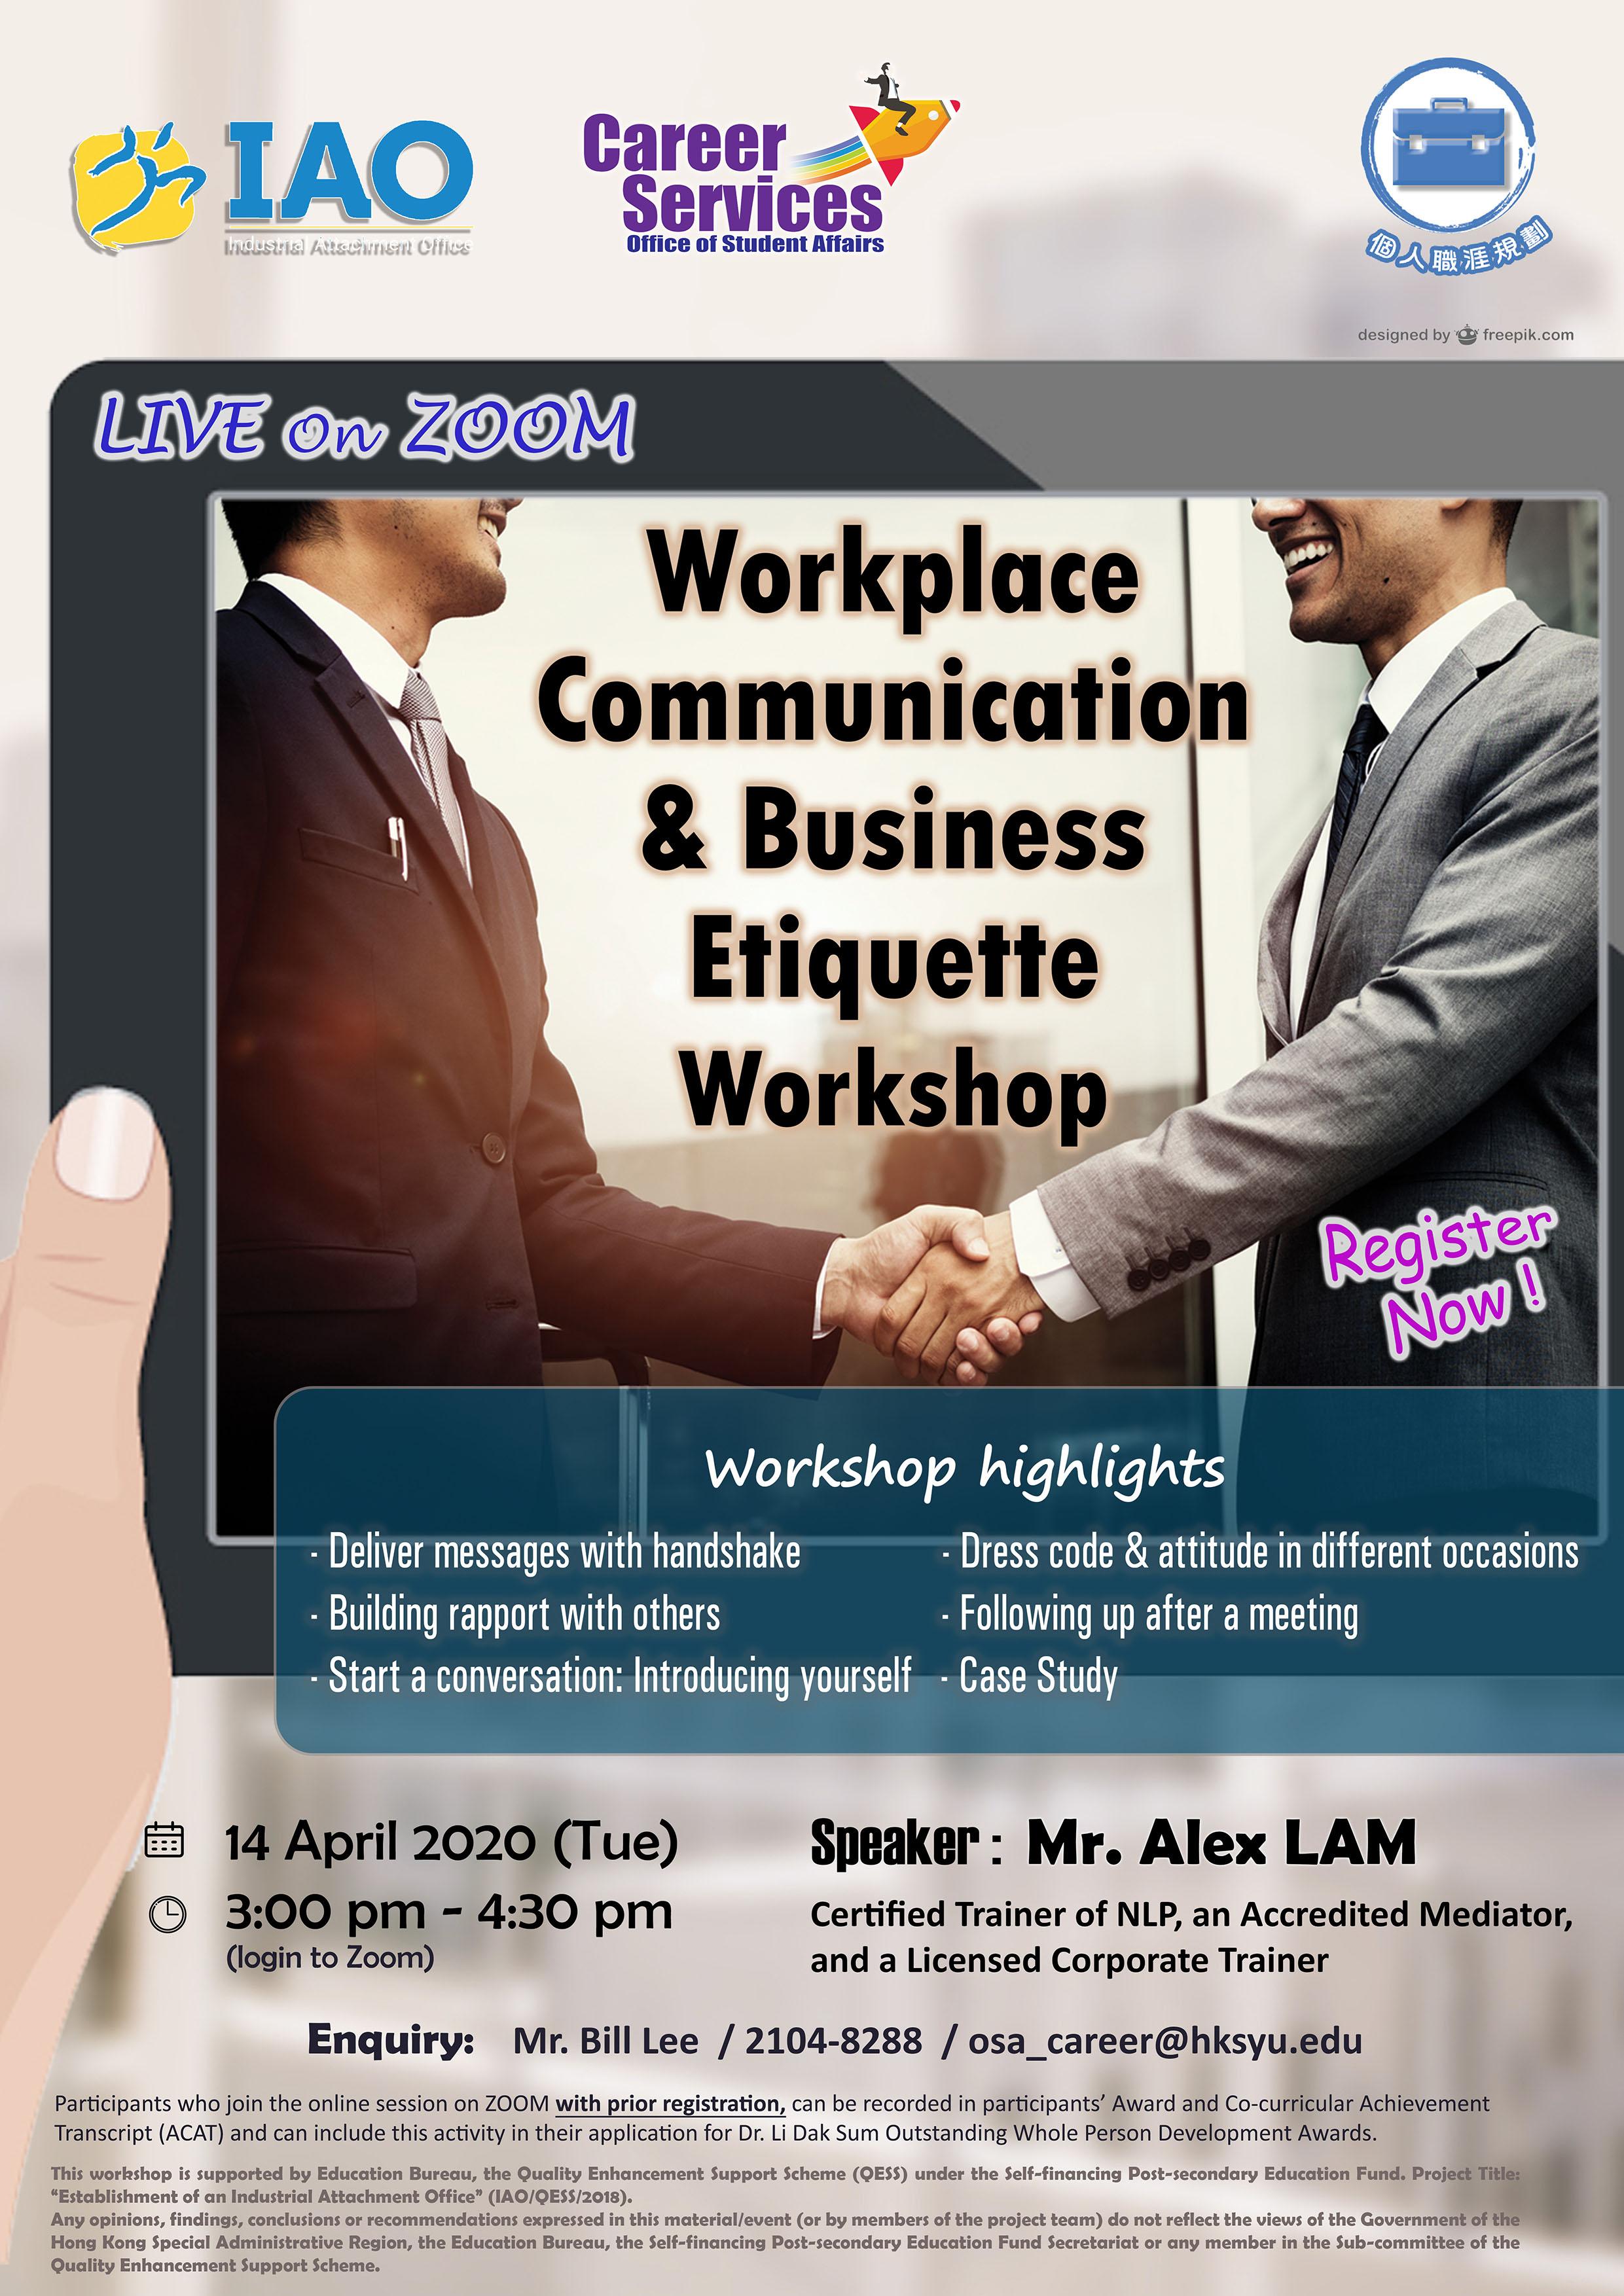 Workplace Communication & Business Etiquette Workshop 14 April 2020 (Tuesday) 